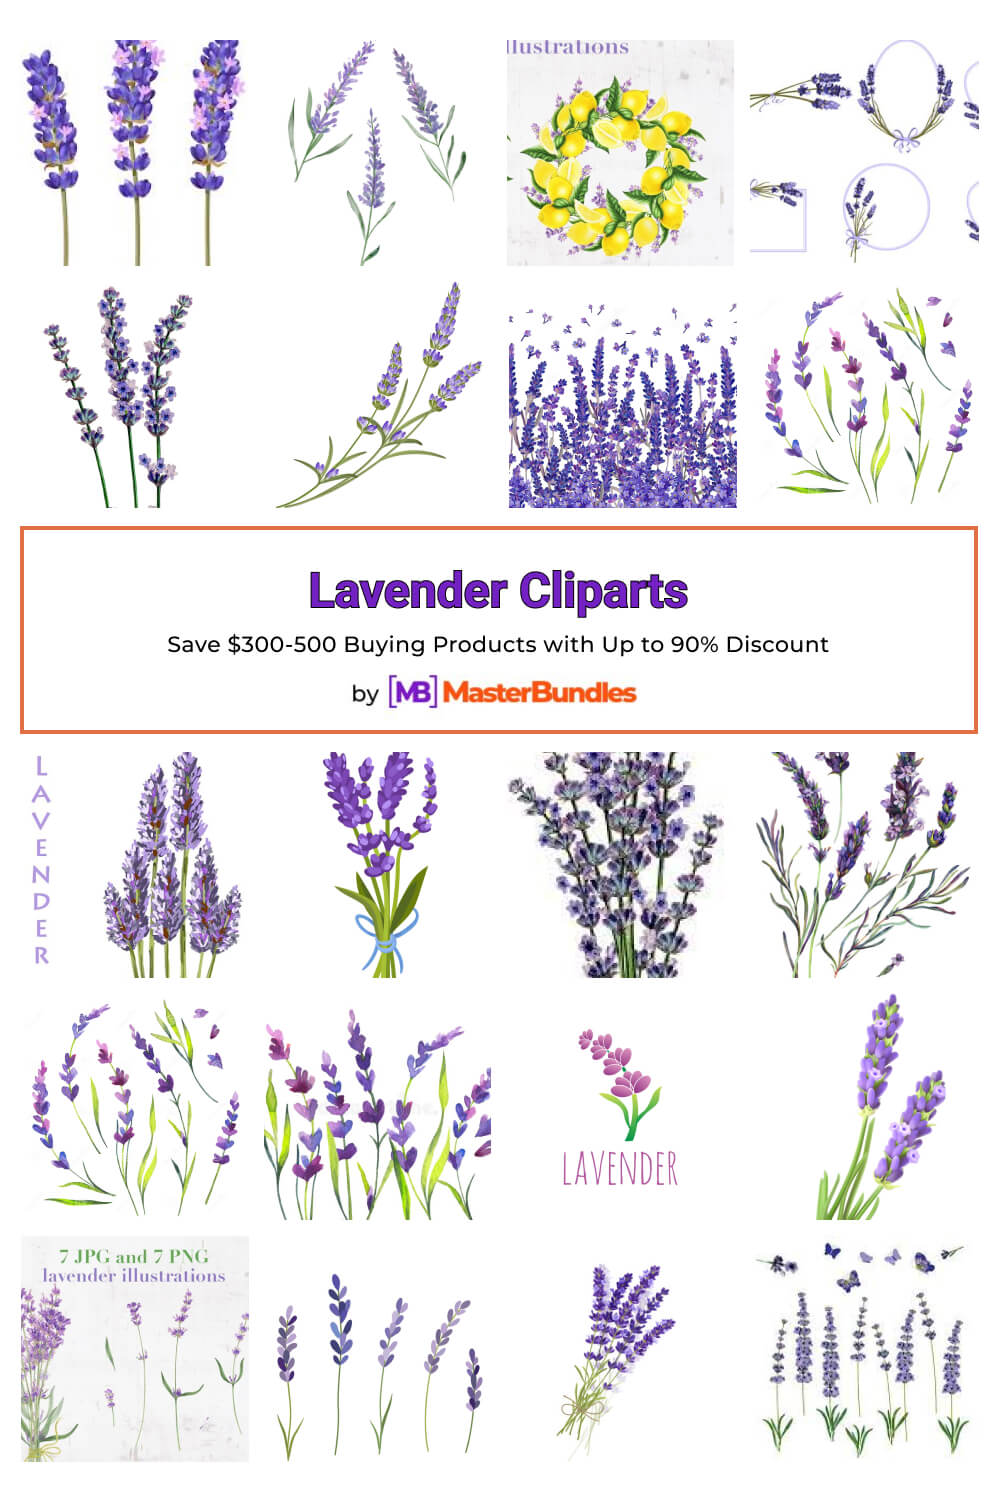 lavender cliparts pinterest image.